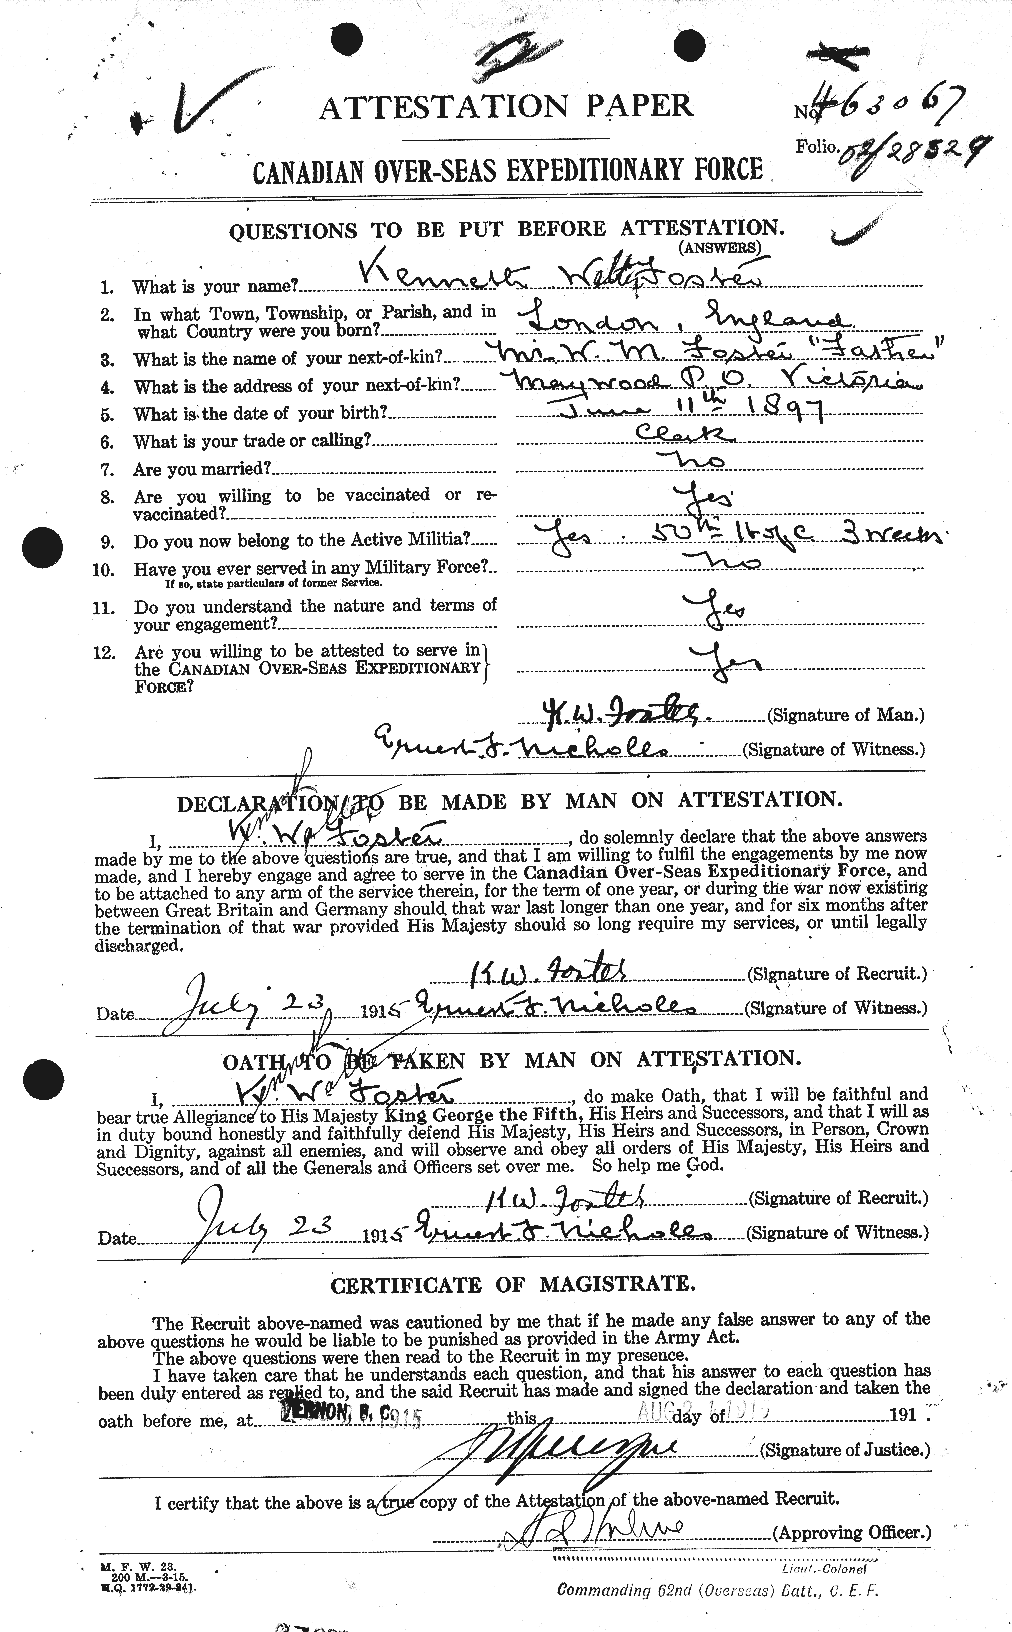 Dossiers du Personnel de la Première Guerre mondiale - CEC 333396a